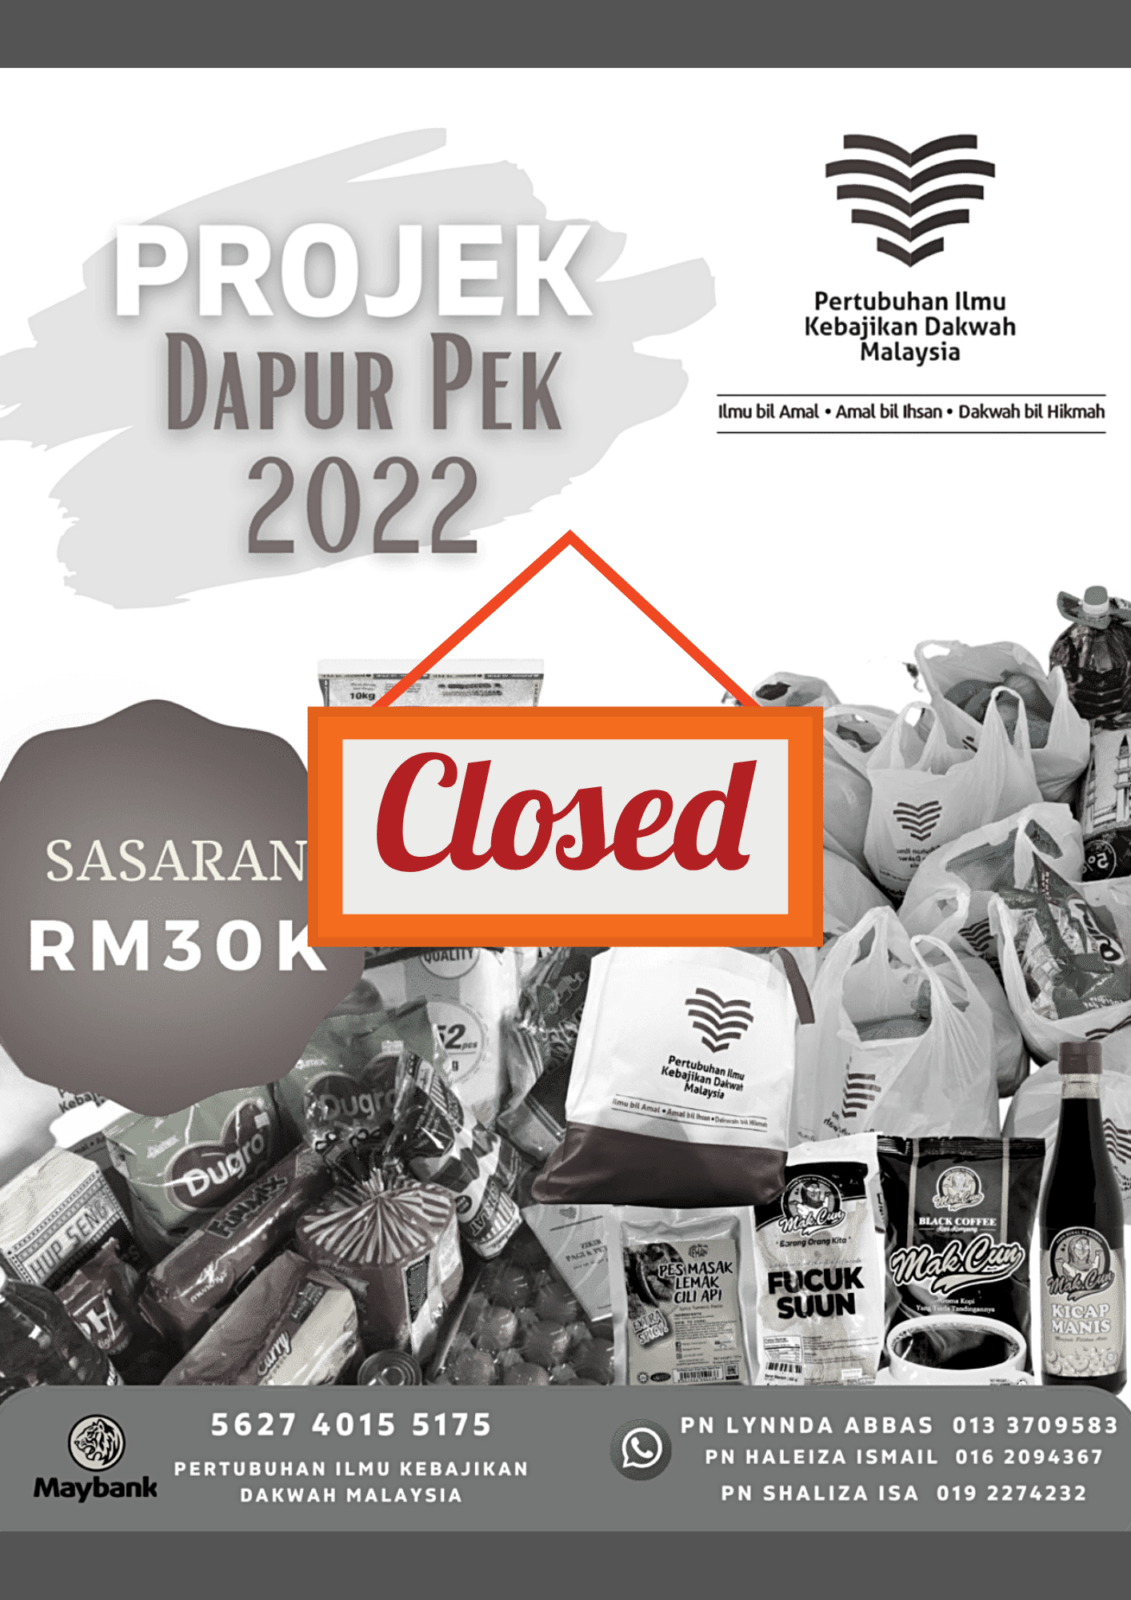 Projek Dapur Pek 2022 - Closed